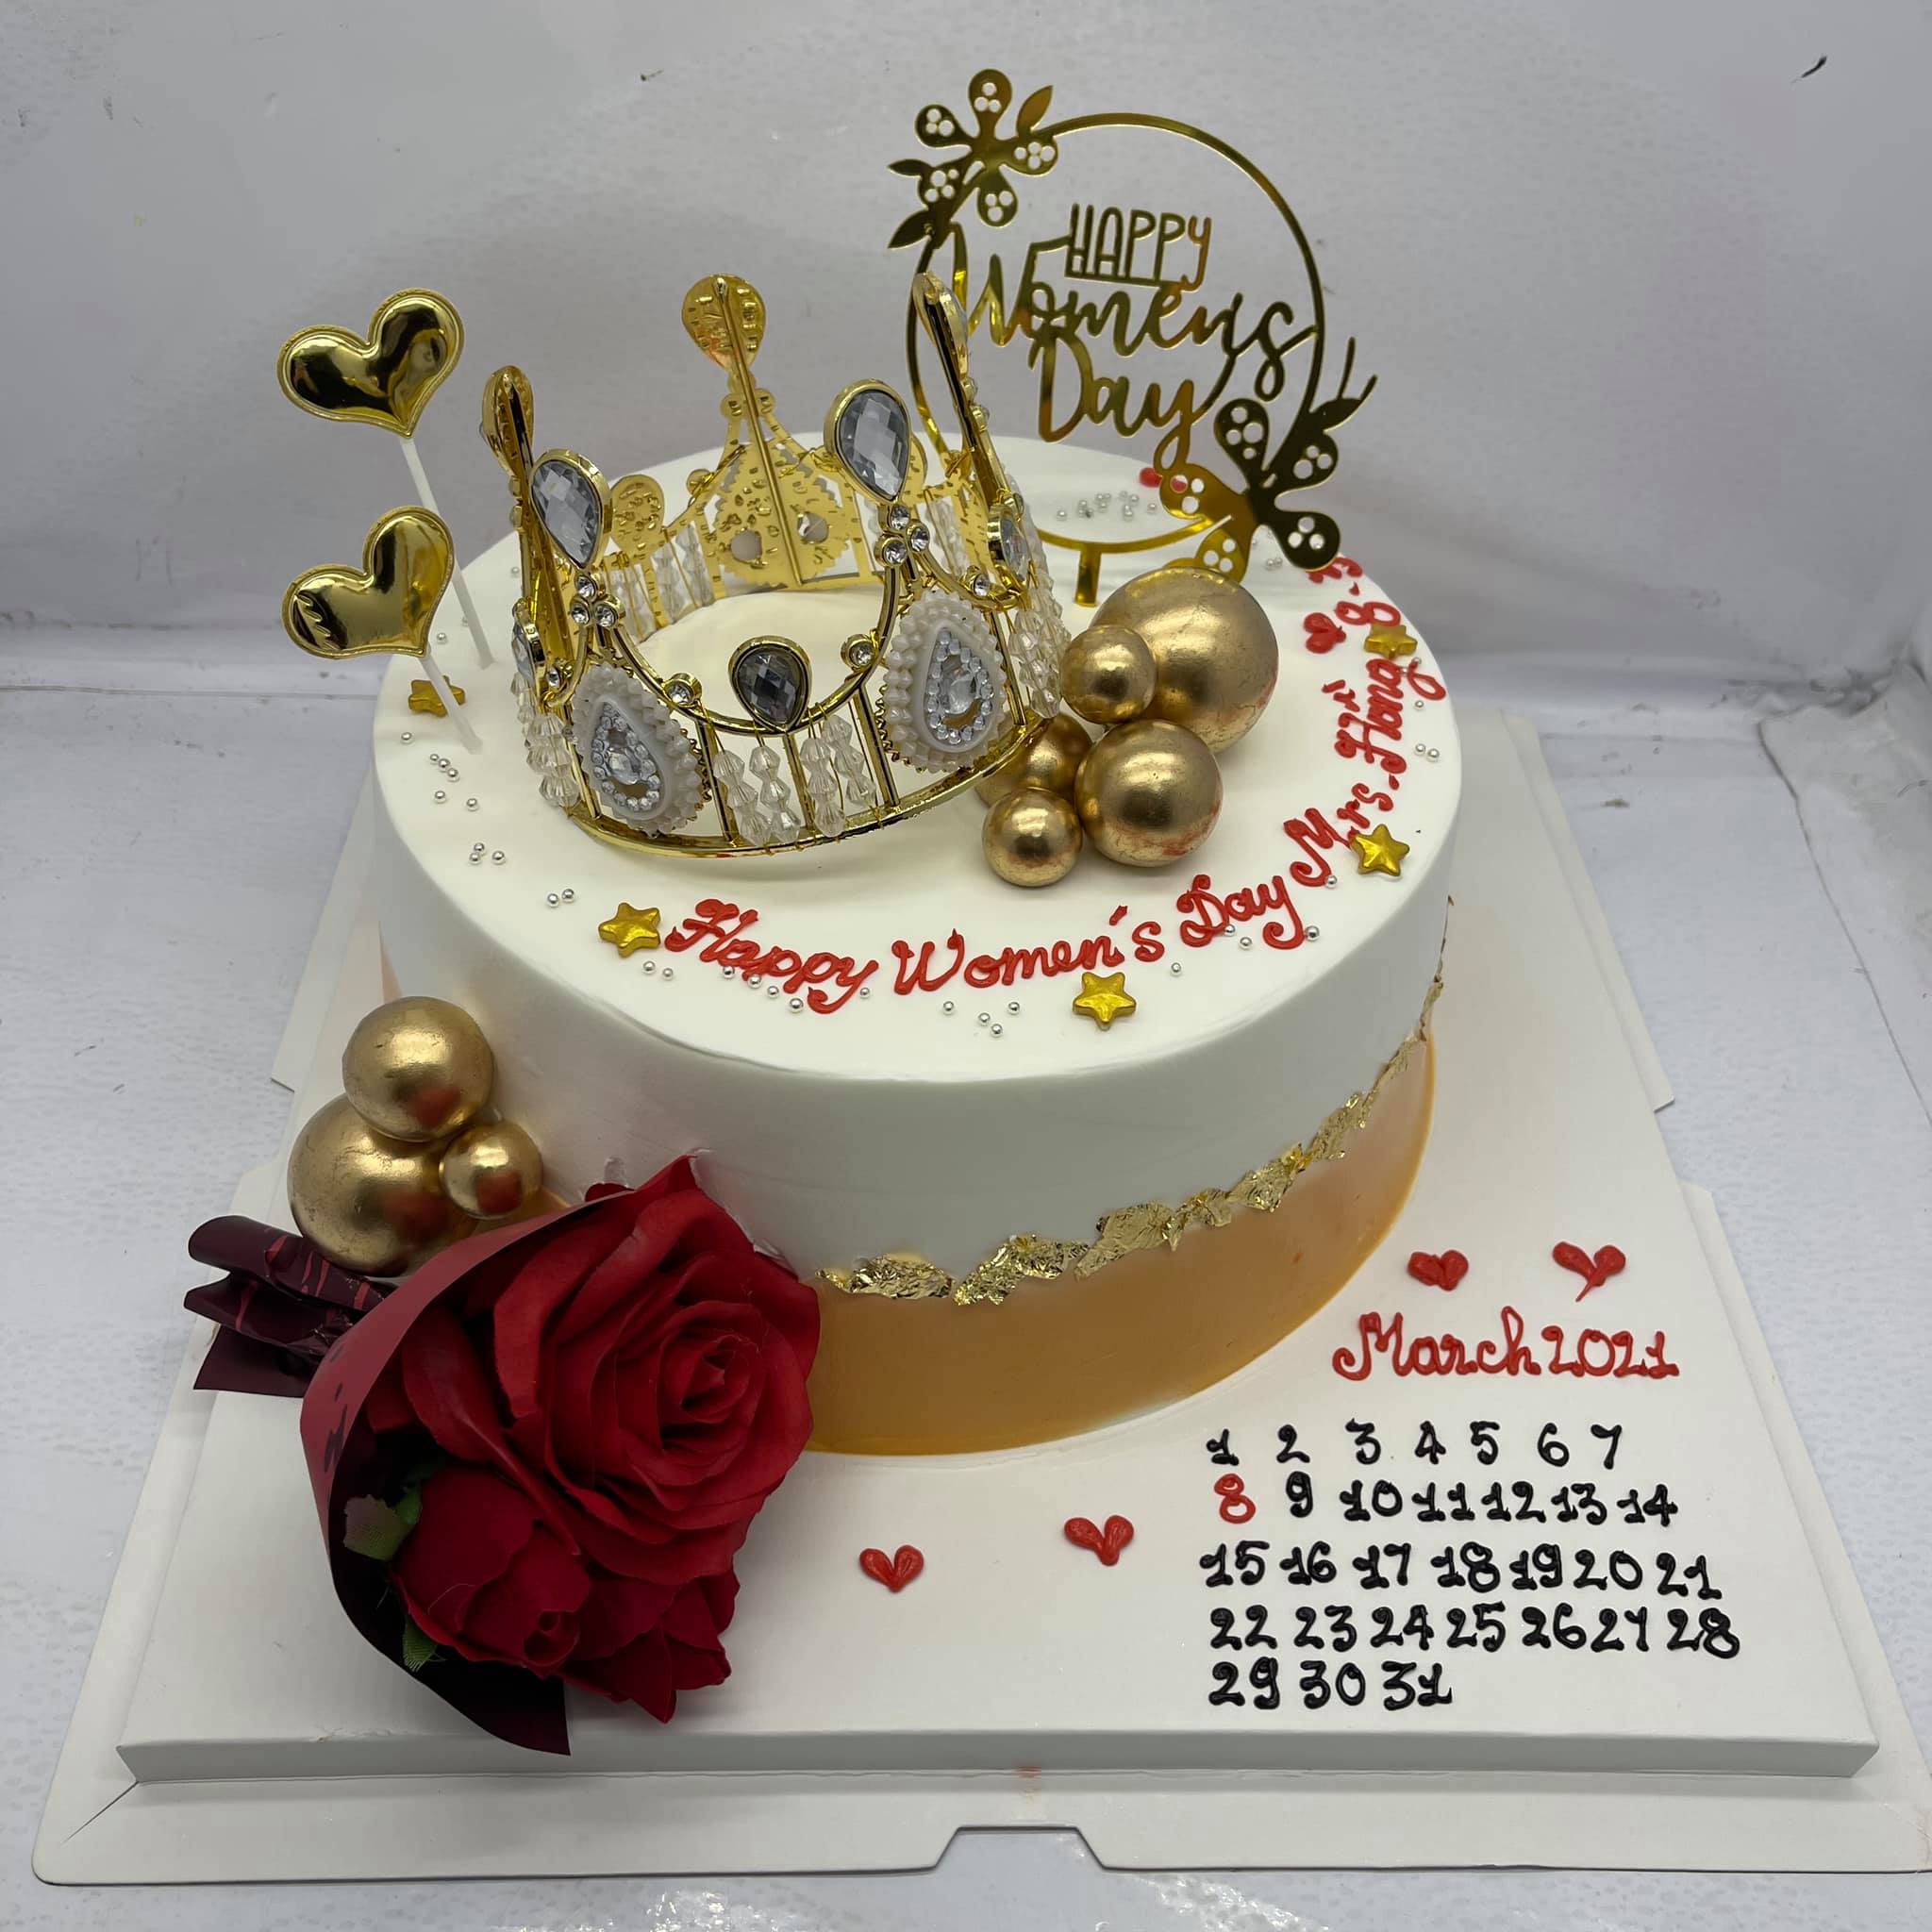 Chào đón sinh nhật của nàng công chúa với mẫu bánh sinh nhật vương miện độc đáo và thật xinh đẹp. Hãy xem hình ảnh liên quan để chọn lựa một chiếc bánh tuyệt vời nhất cho ngày sinh nhật của nàng.